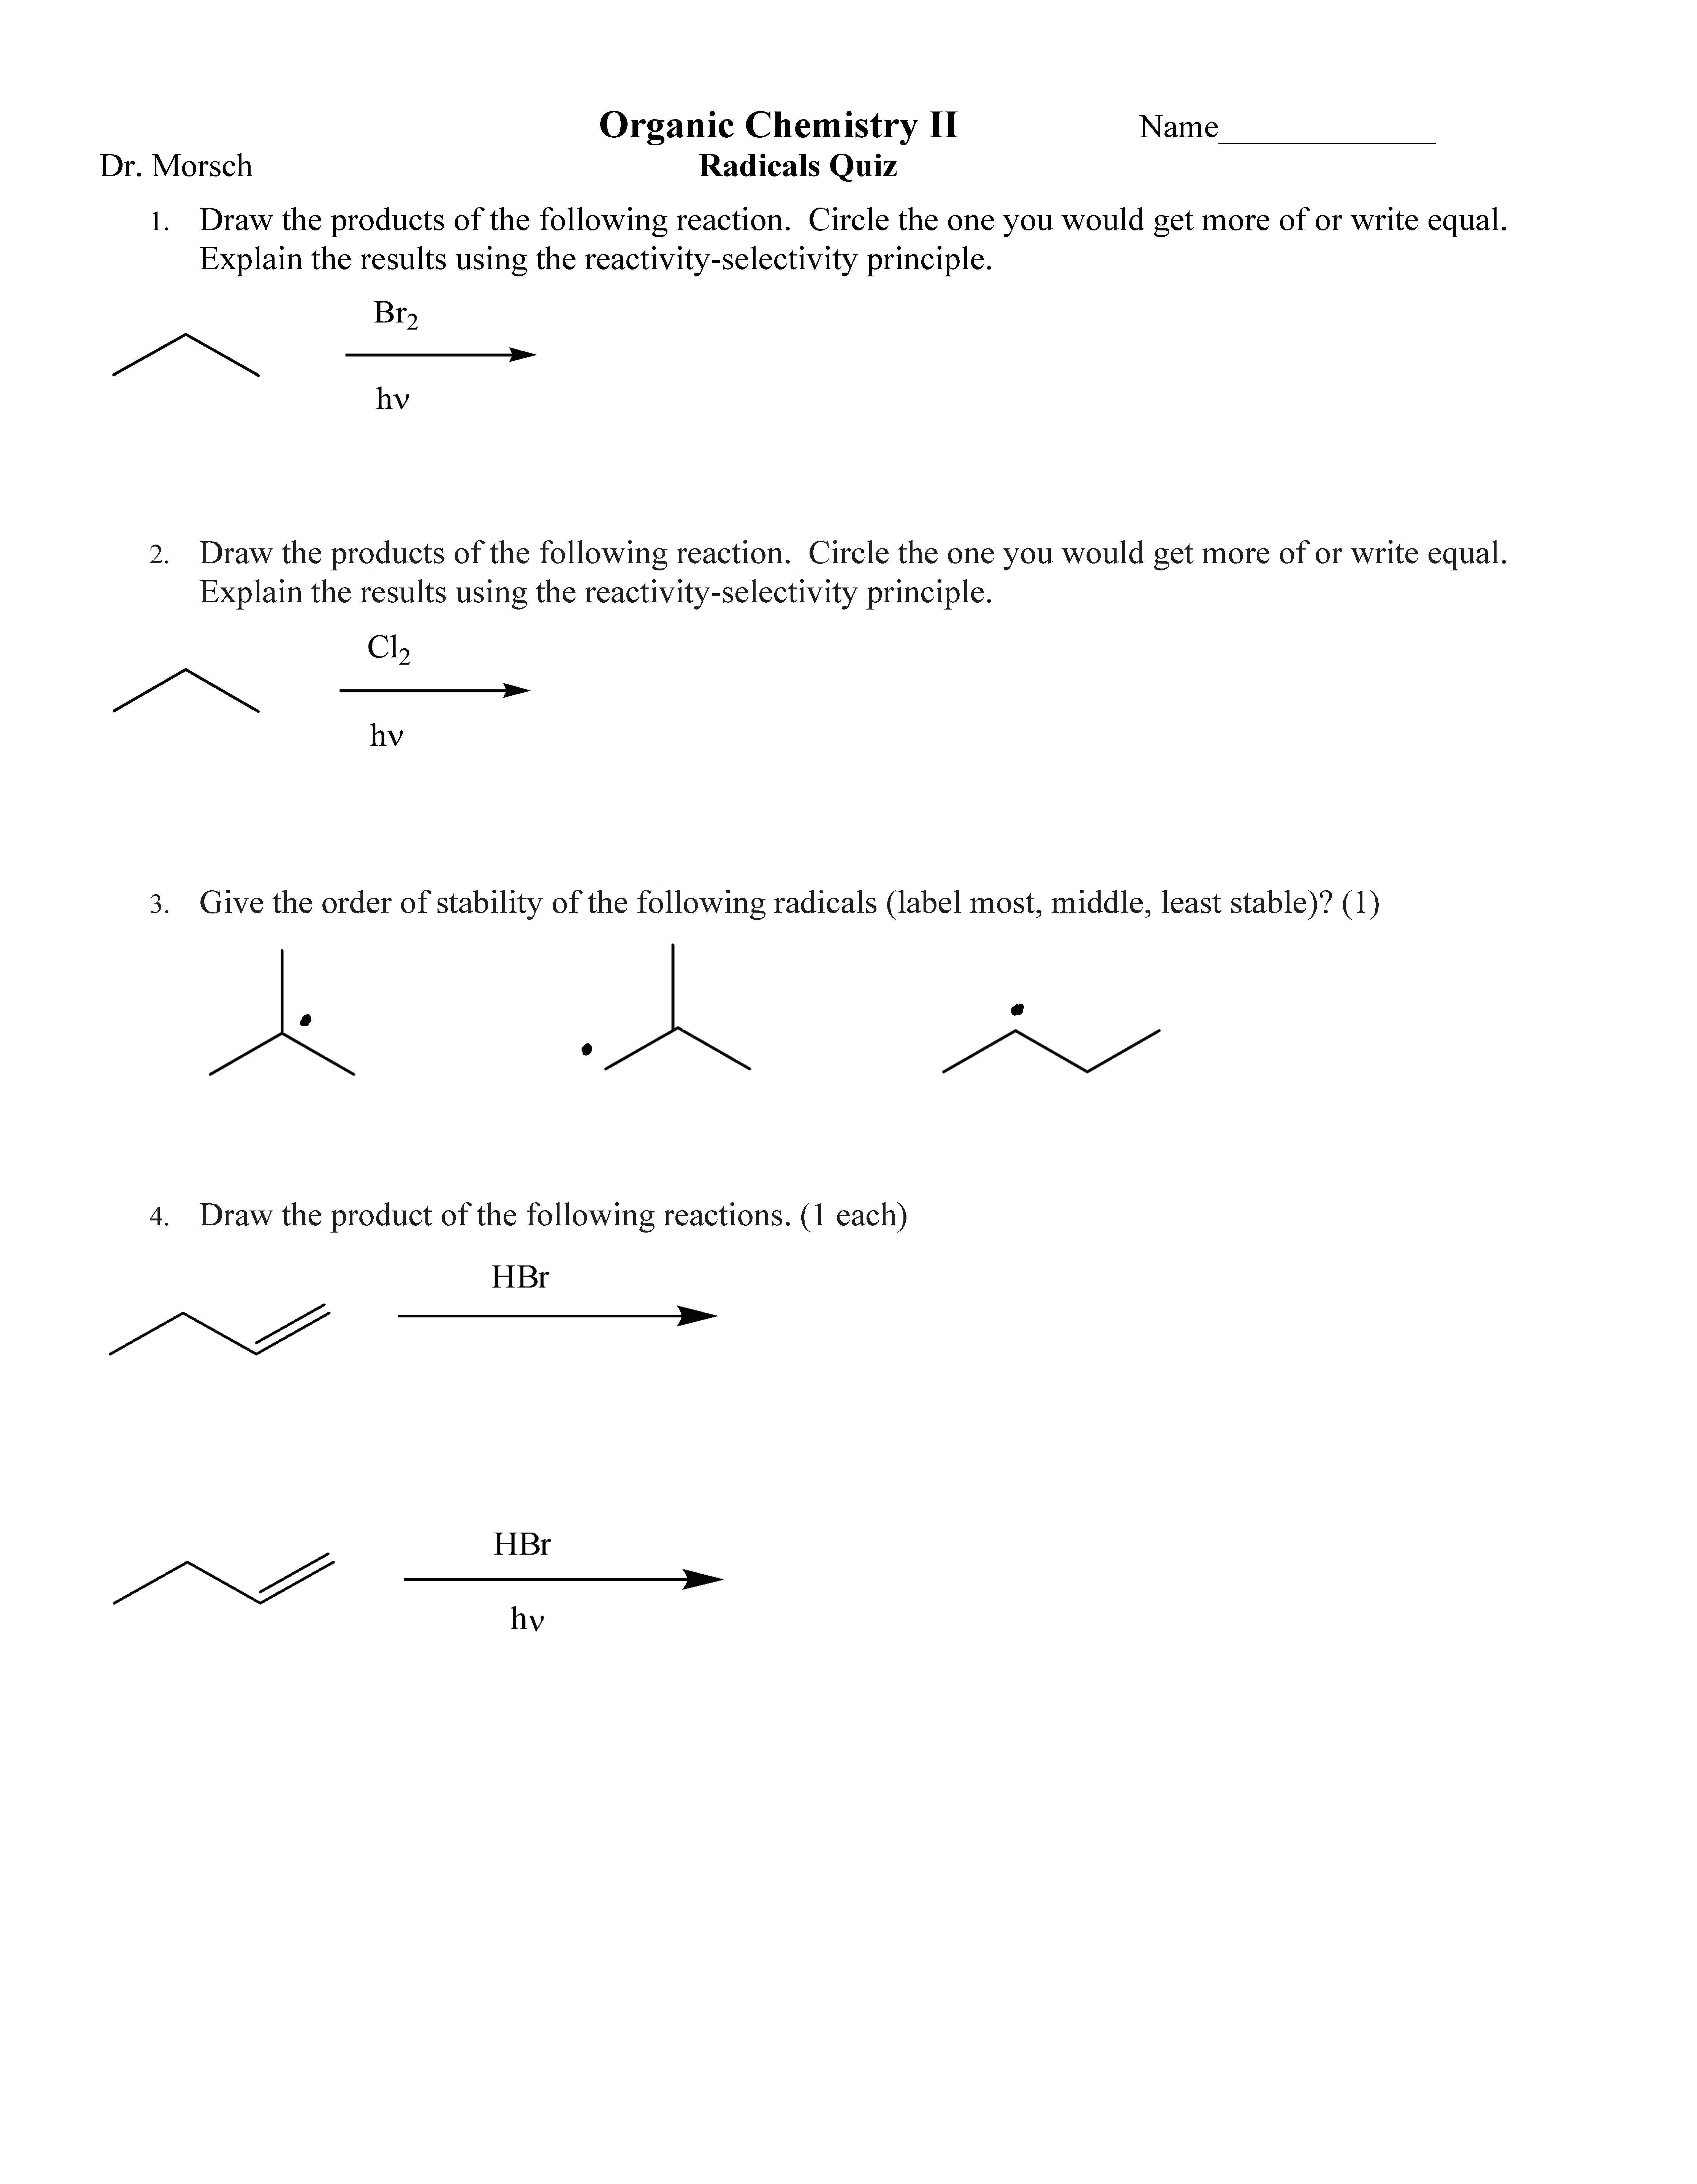 Org Chem 2 Radicals Quiz.png